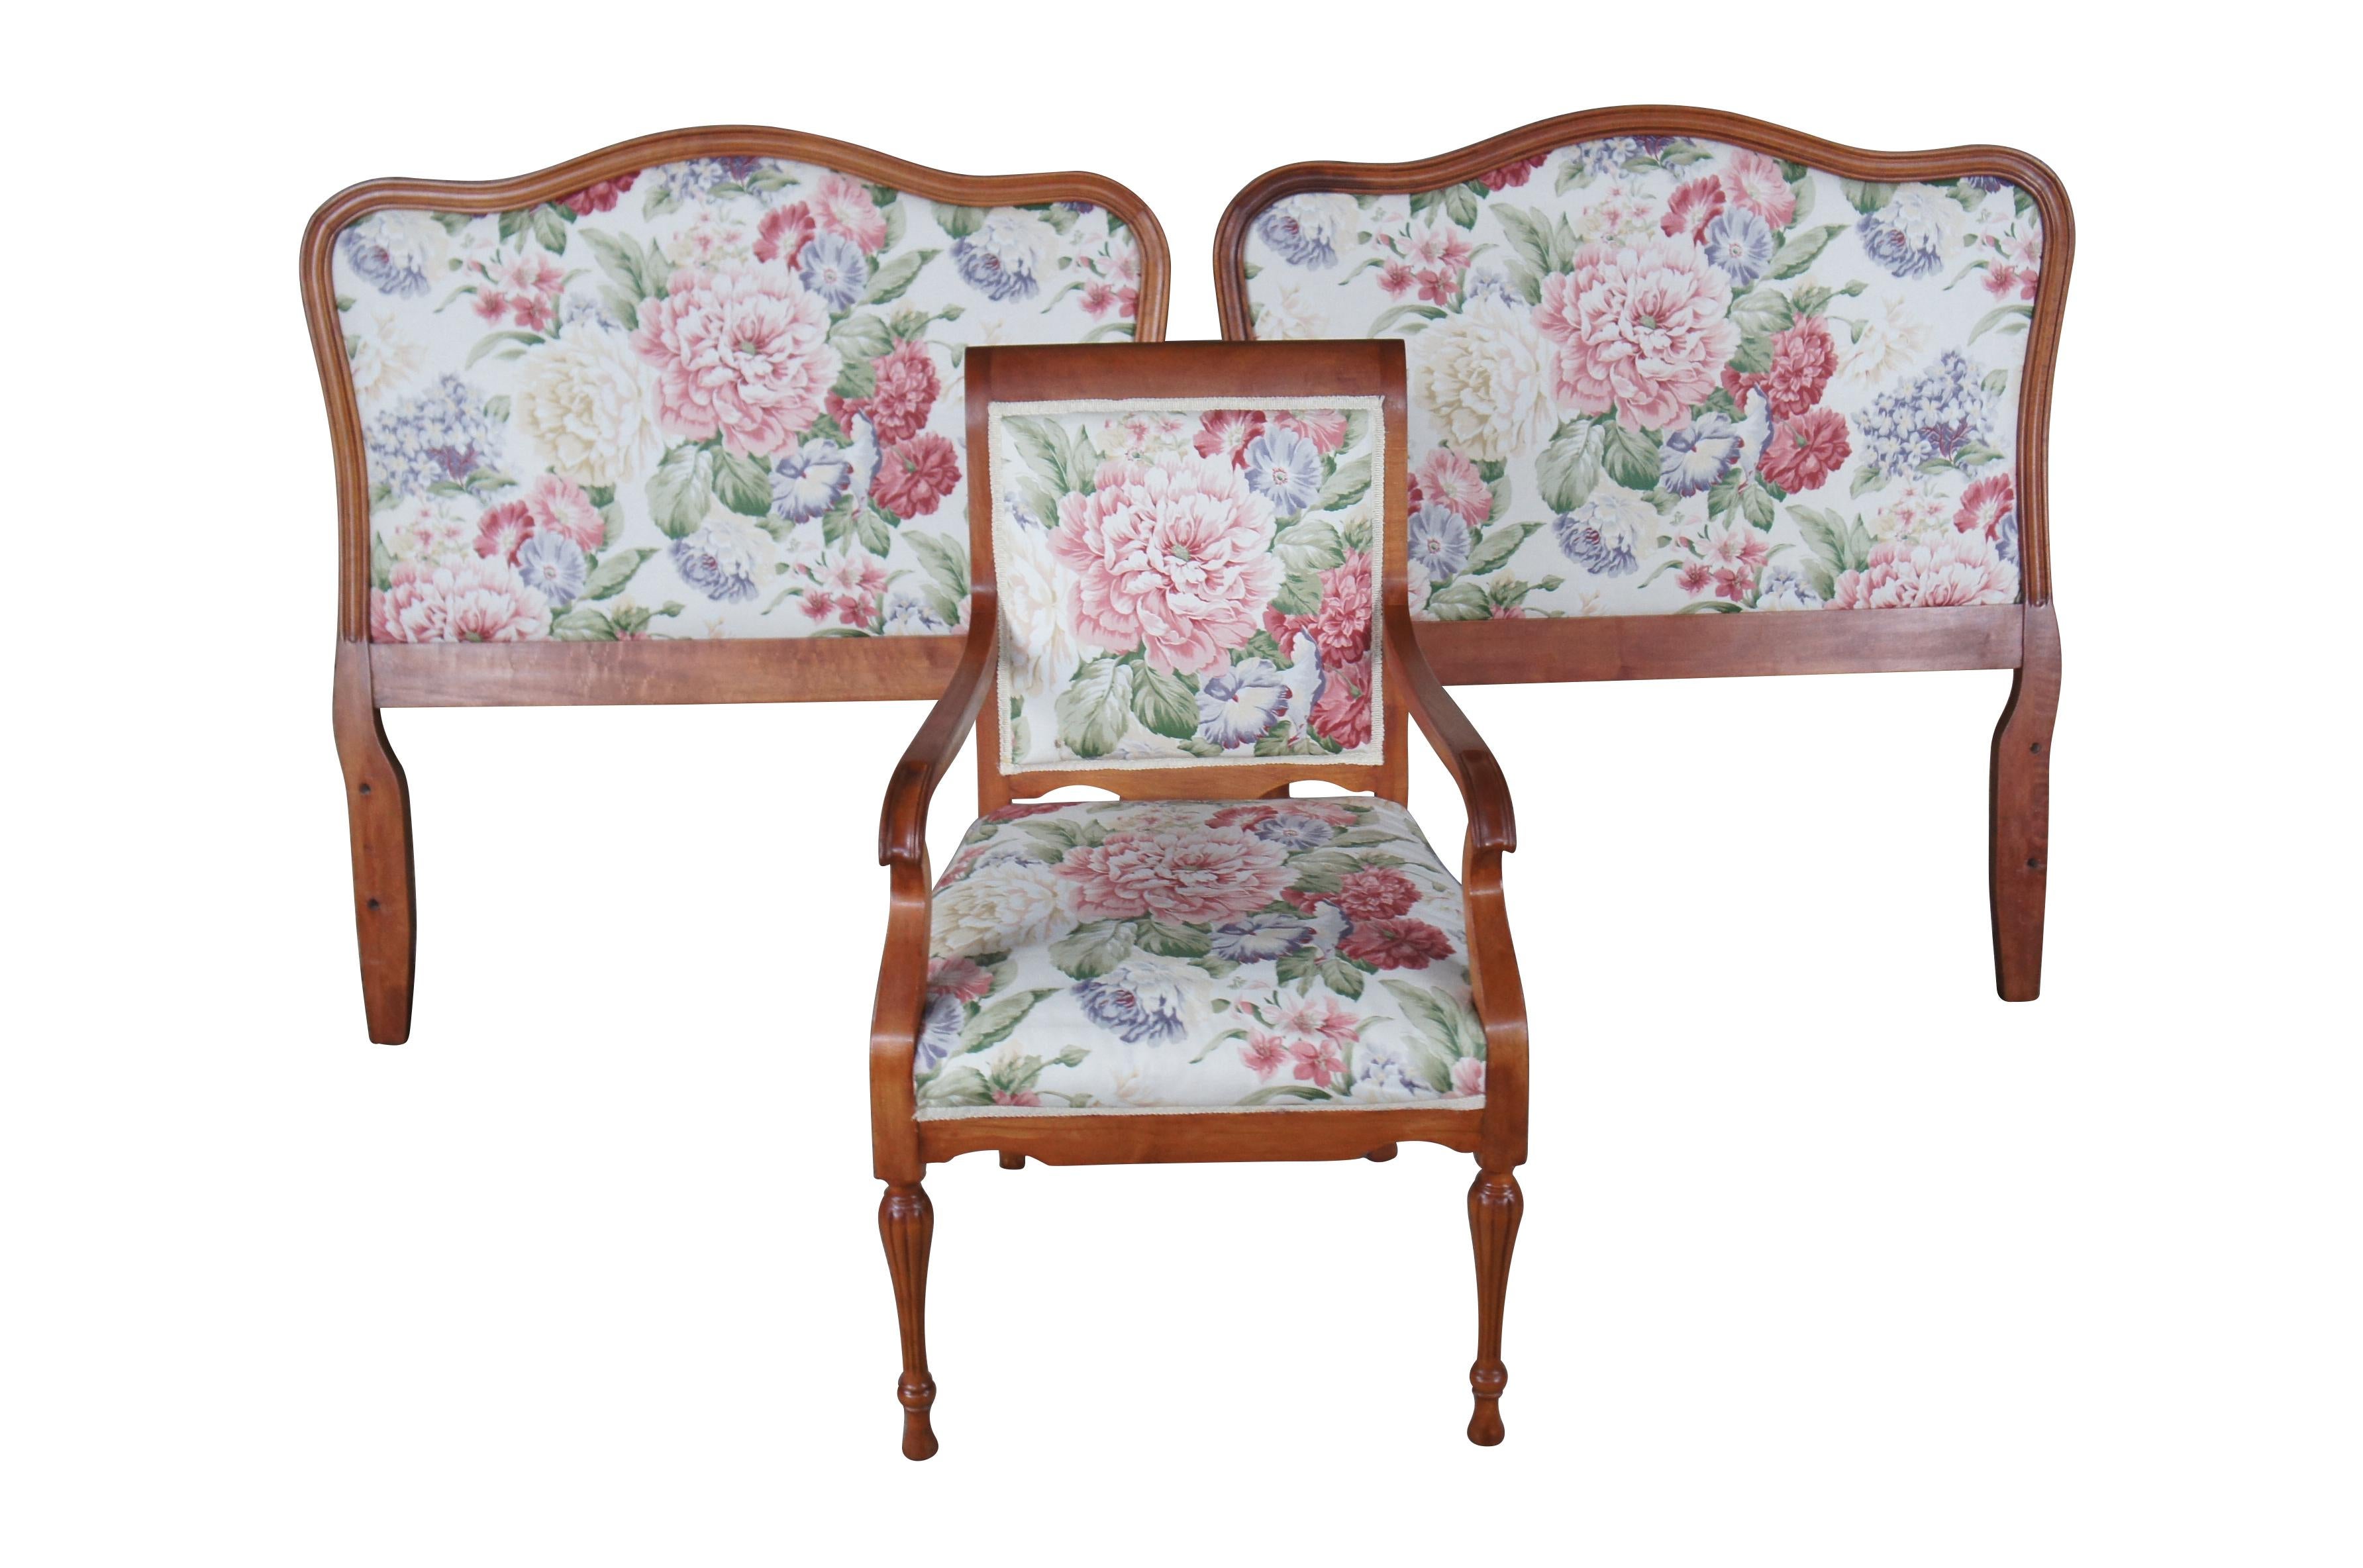 Ein Vintage-Paar aus zwei Einzelbetten und einem passenden Sessel.  Hergestellt aus Mahagoni mit geblümter Polsterung.  Die beiden Betten  camelback design.  Der Sessel hat schräge Armlehnen und wird von kannelierten und gedrechselten Beinen